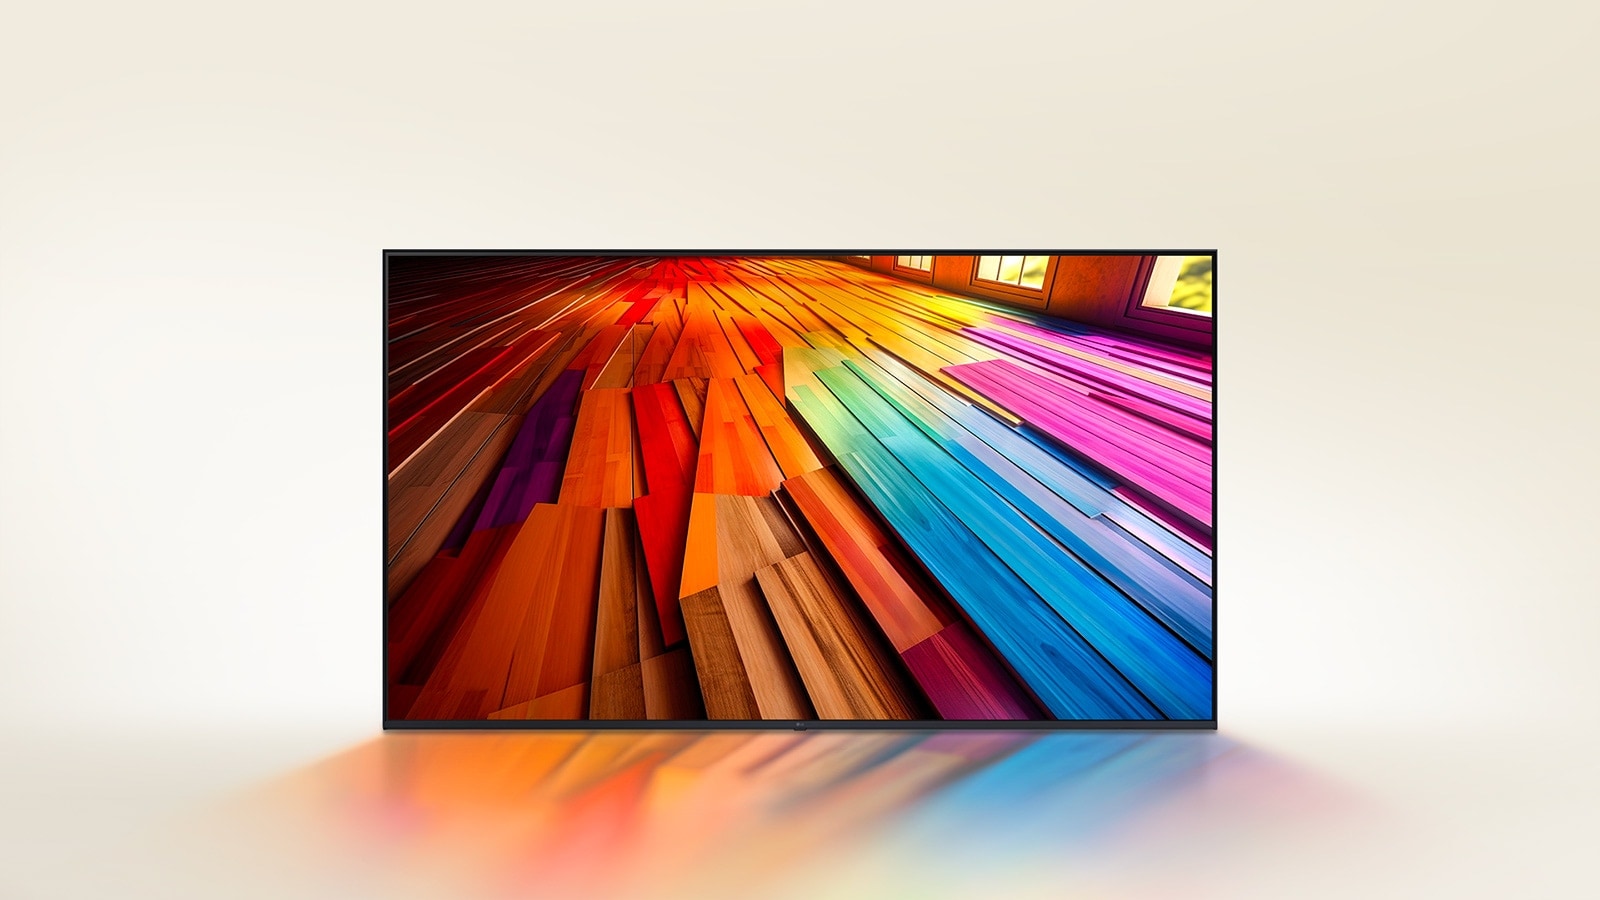 Auf einem LG UHD TV-Gerät sehen wir einen farbenfrohen, langen Parkettboden.